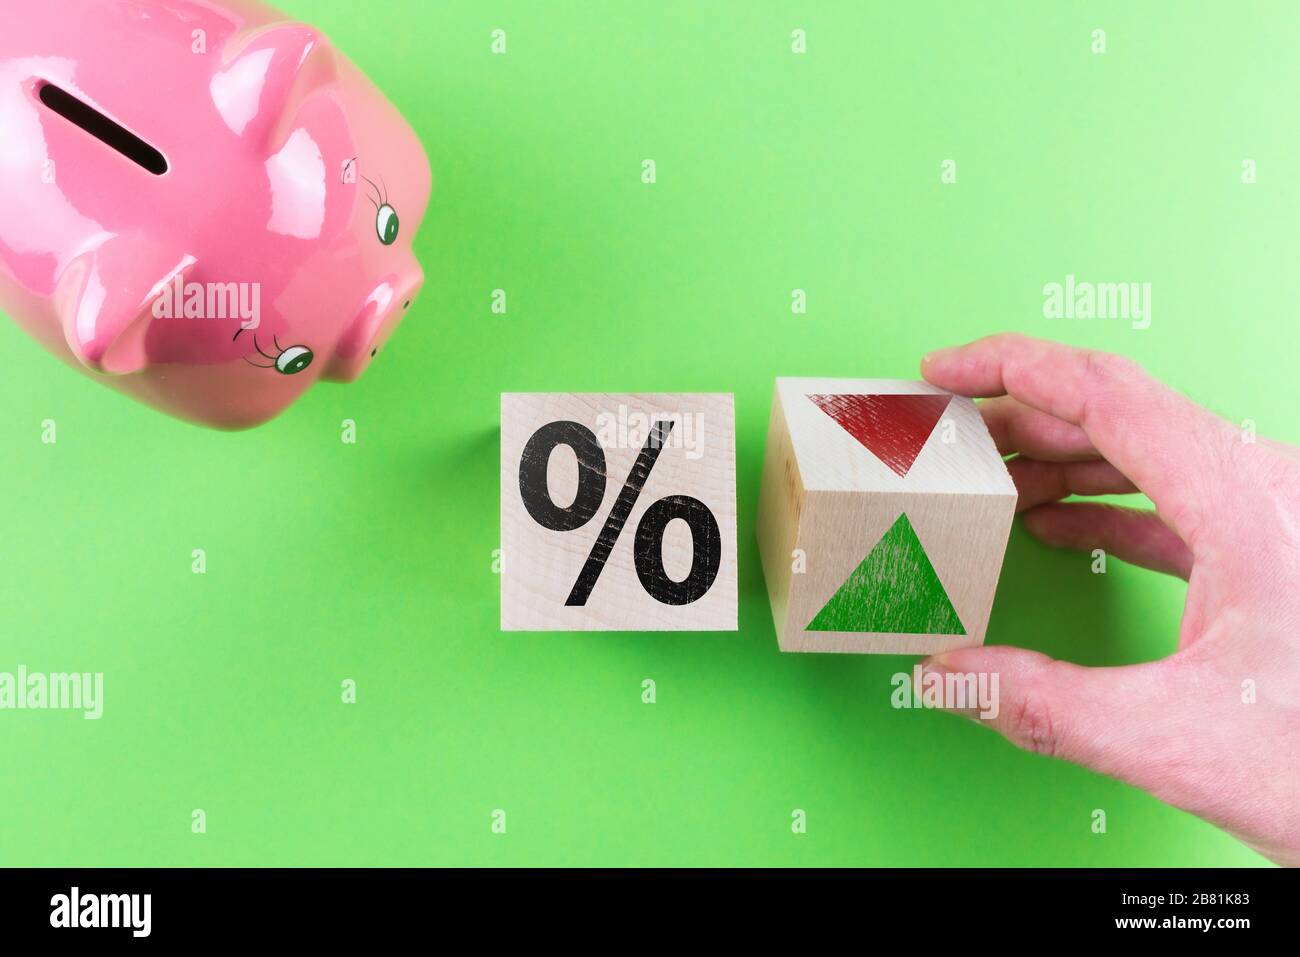 changements dans le concept financier des taux d'intérêt, vue de dessus du signe de pourcentage et symbole de flèche sur des cubes de bois à côté de la banque de porc Banque D'Images